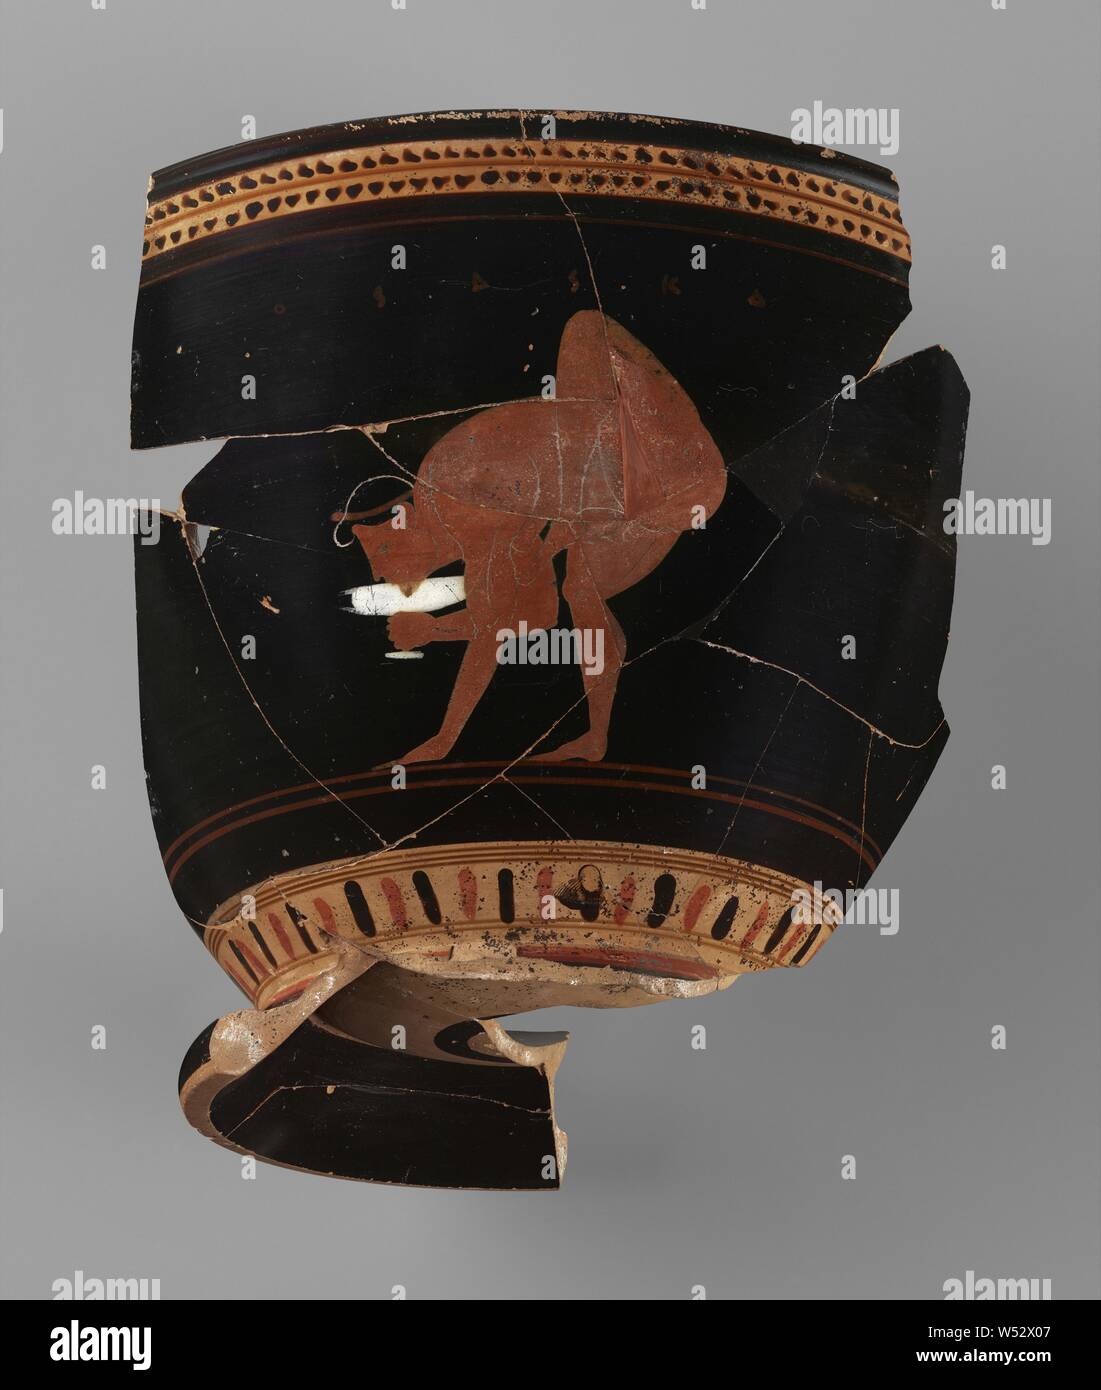 Skyphos fragmentaires, attribué à près de la peintre Theseus (Grec (Grenier), actif sur 510 - environ 490 B.C.), attribuée à la classe Heron (étrusque, 680 660 actifs - C.-B.), Athènes, Grèce, environ 500 avant J.-C., terre cuite, 15,8 × 12 × 14 cm (6 1/4 x 4 3/4 x 5 1/2 po Banque D'Images